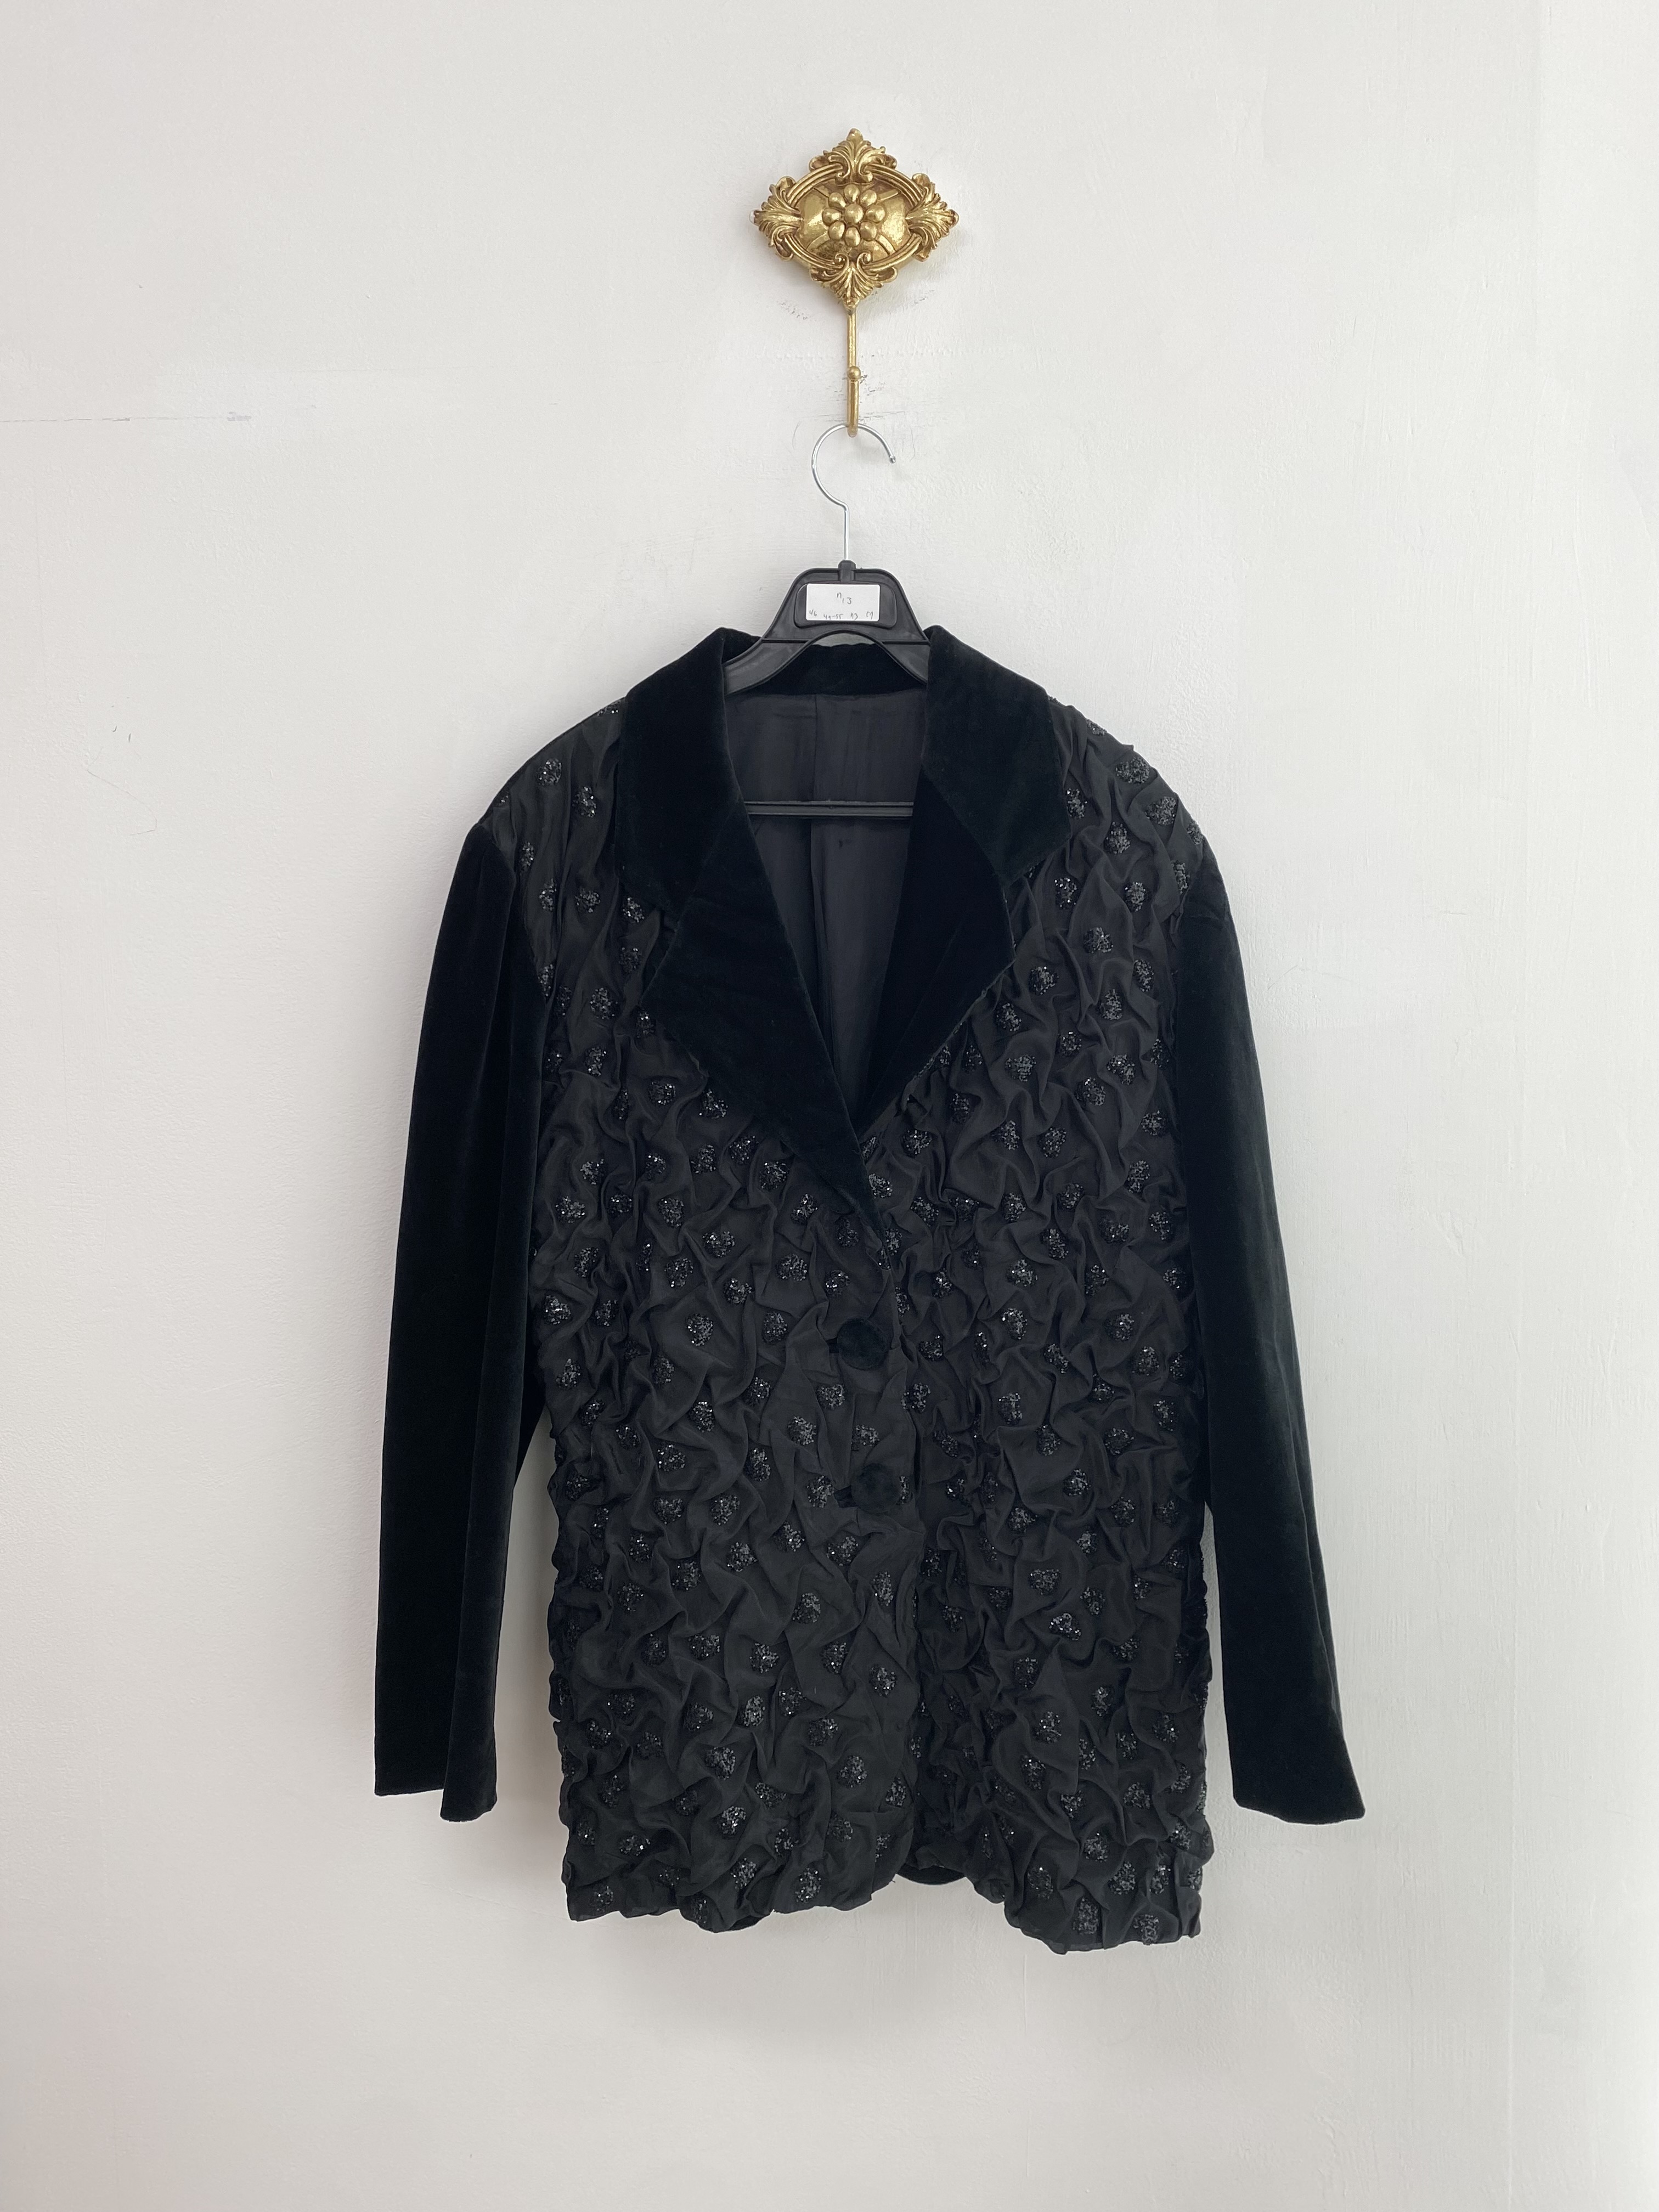 Black sequin heart pattern velvet jacket (made in france)